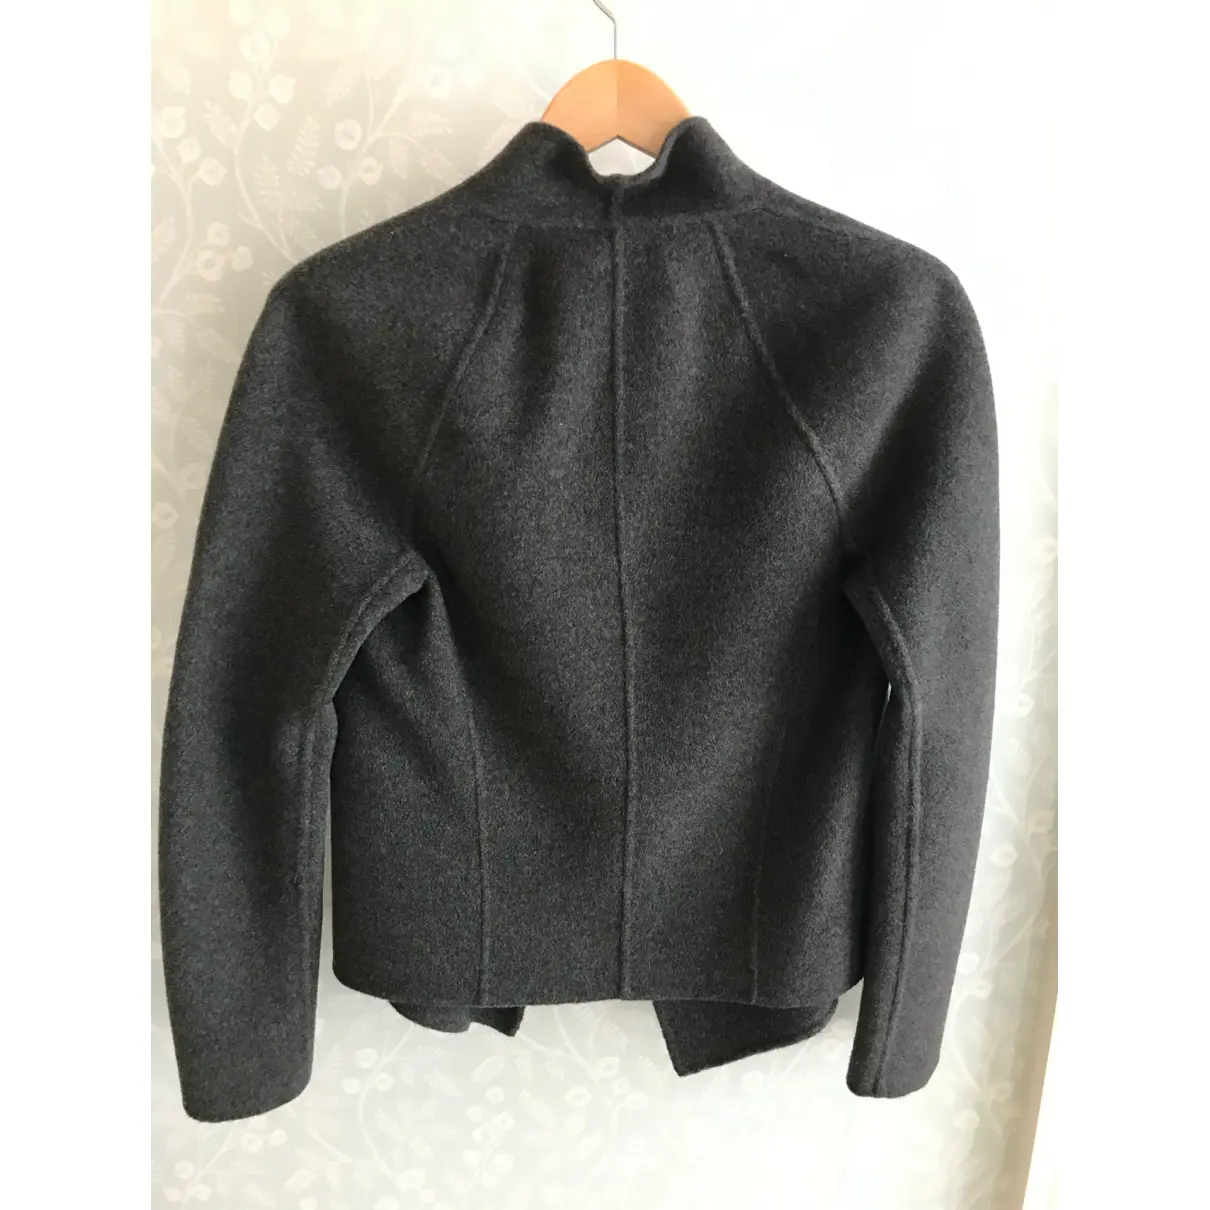 Buy Donna Karan Cashmere jacket online